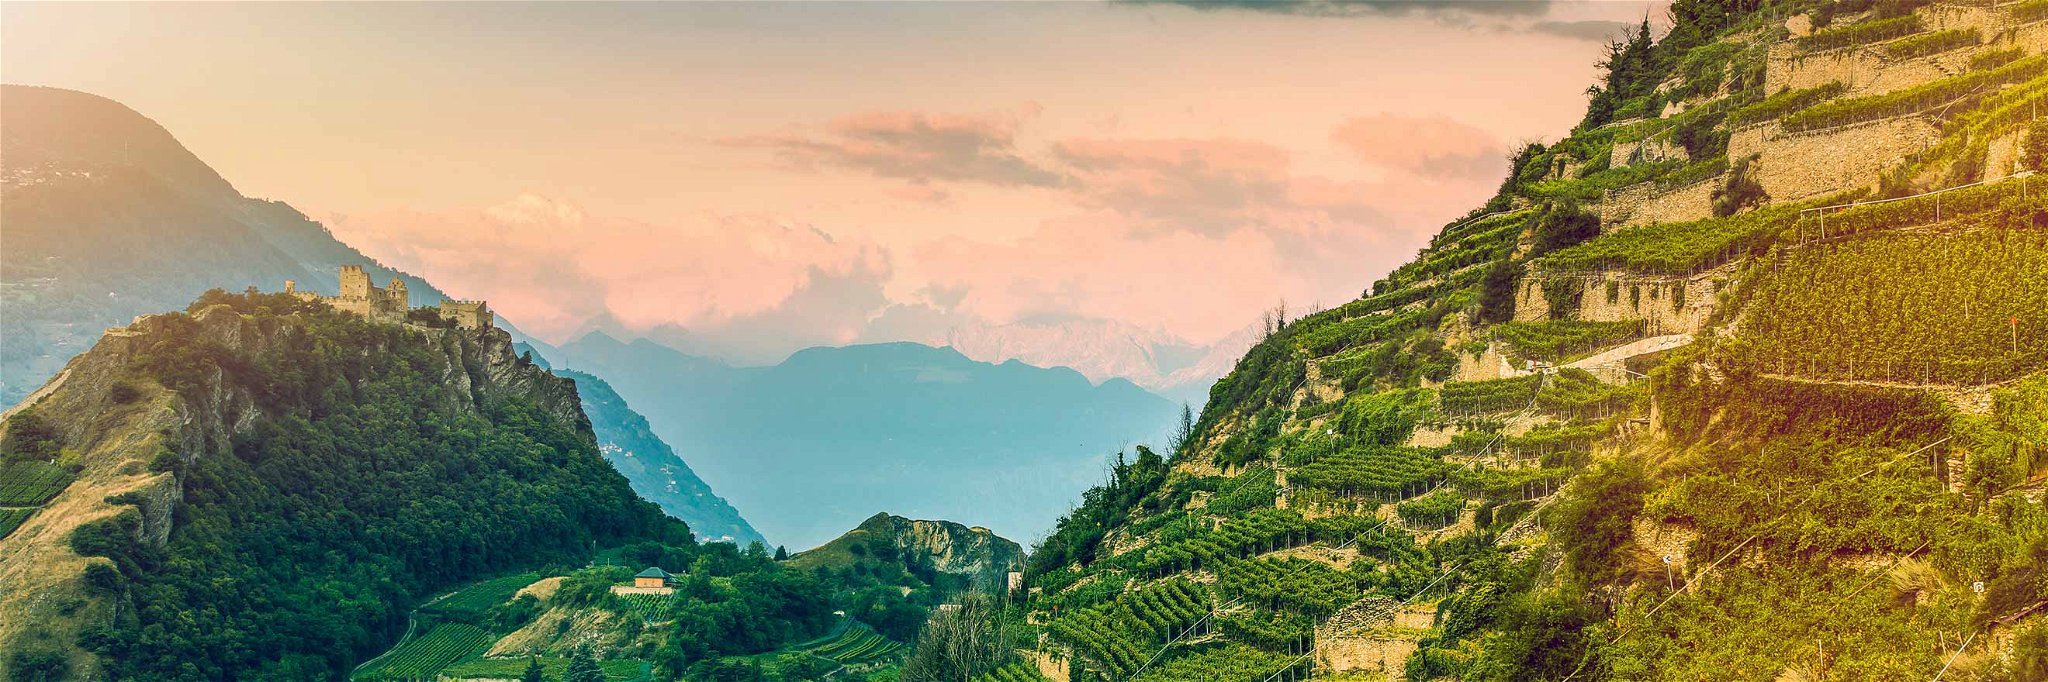 Spektakuläre Rebterrassen und der Blick auf die Alpen sind im Wallis allgegenwärtig. 